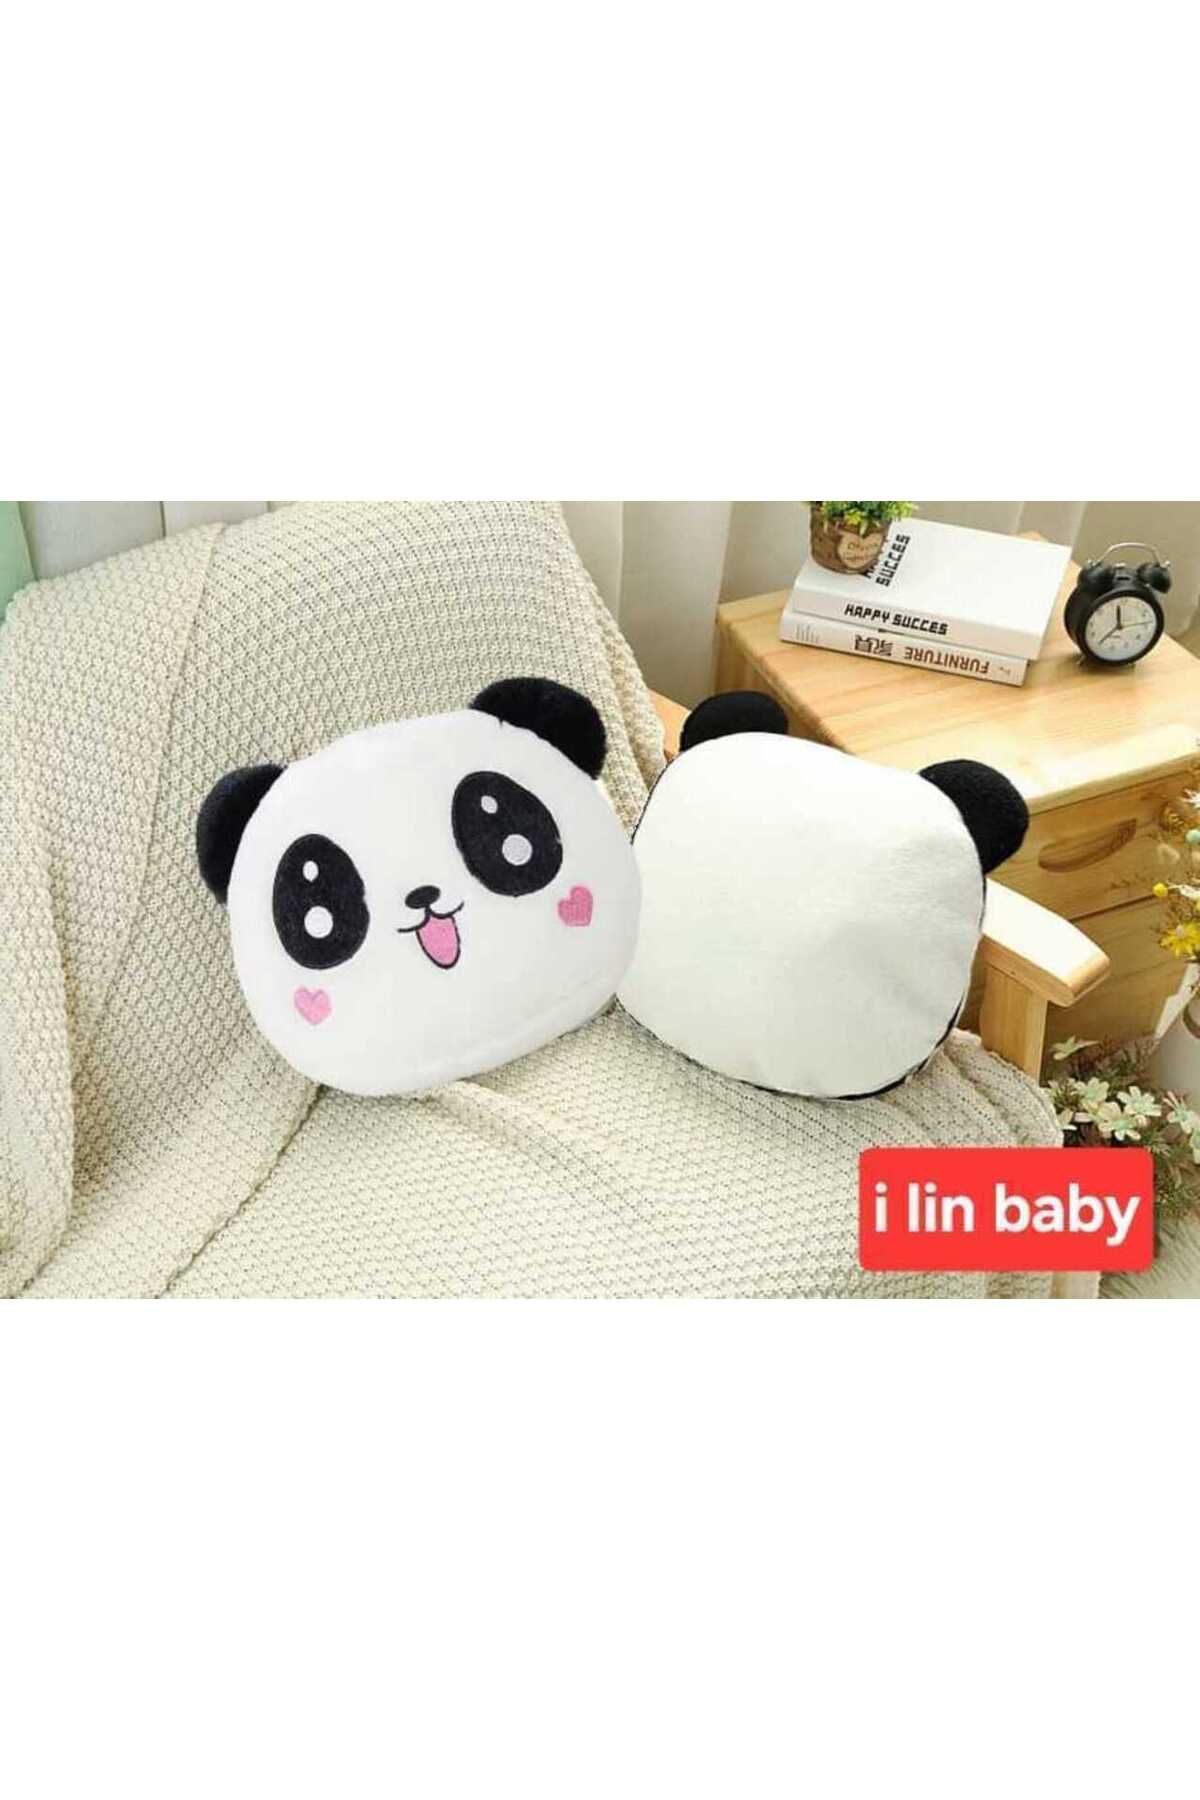 i lin baby Panda Peluş Yastık, Yumuşak Panda Oyuncak Yastık, Panda Desenli Peluş Yastık, Panda Yastık